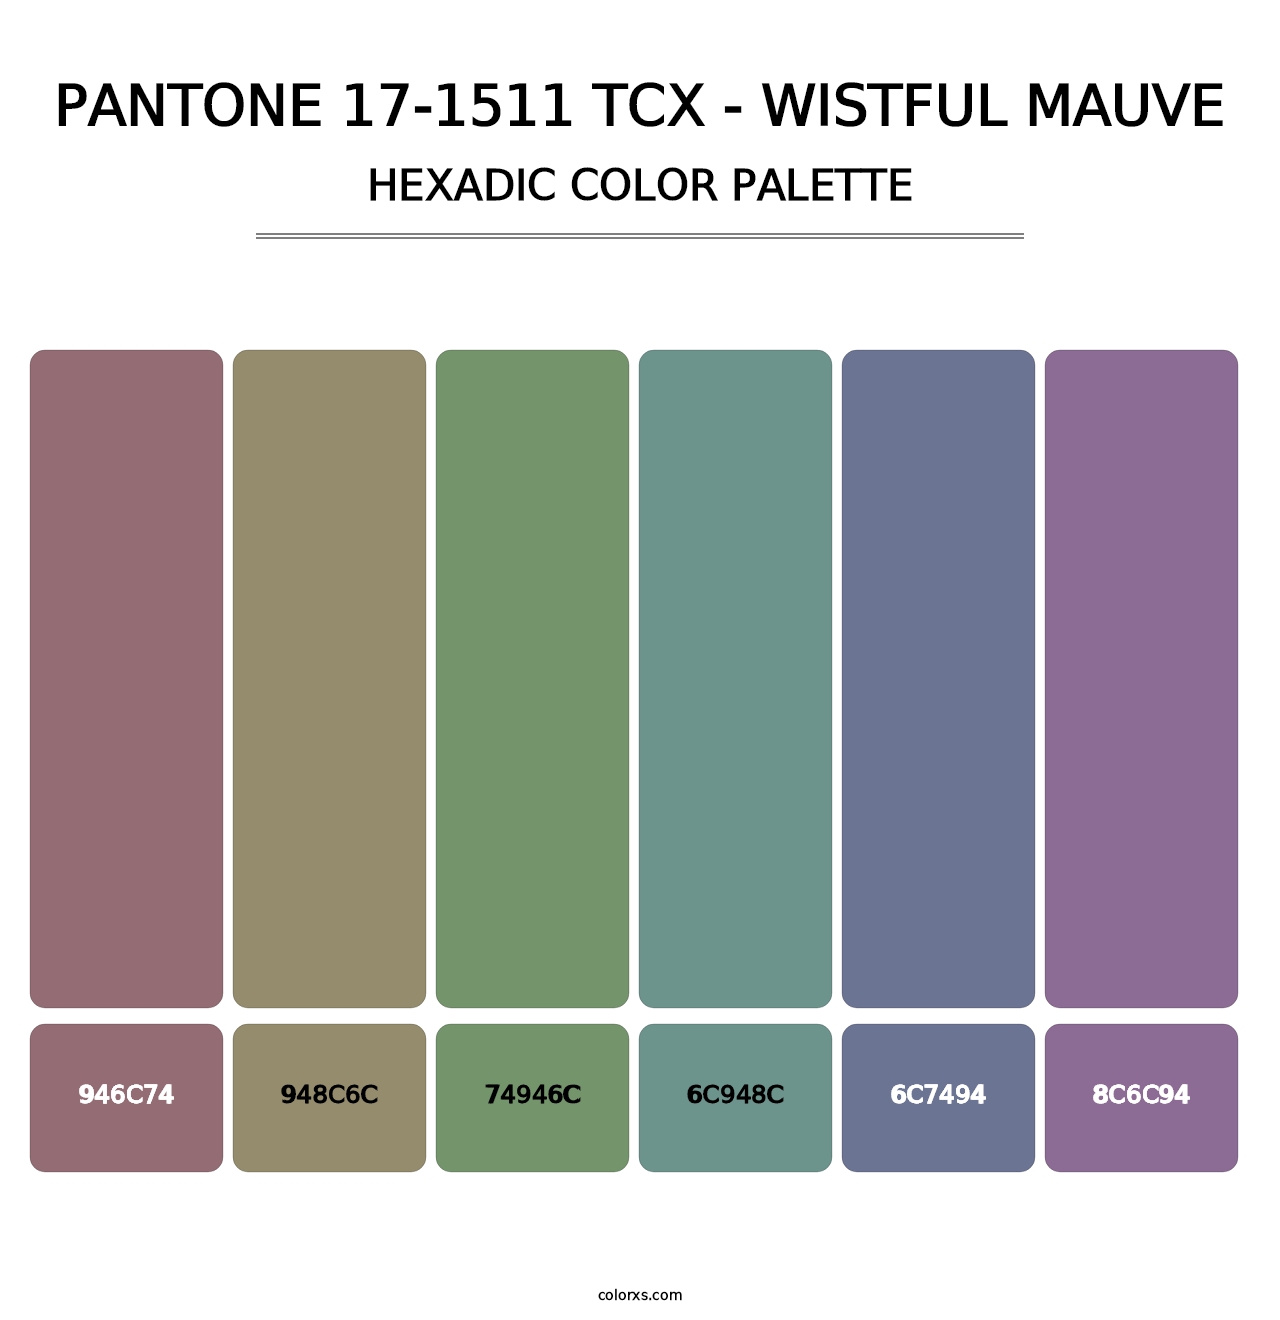 PANTONE 17-1511 TCX - Wistful Mauve - Hexadic Color Palette